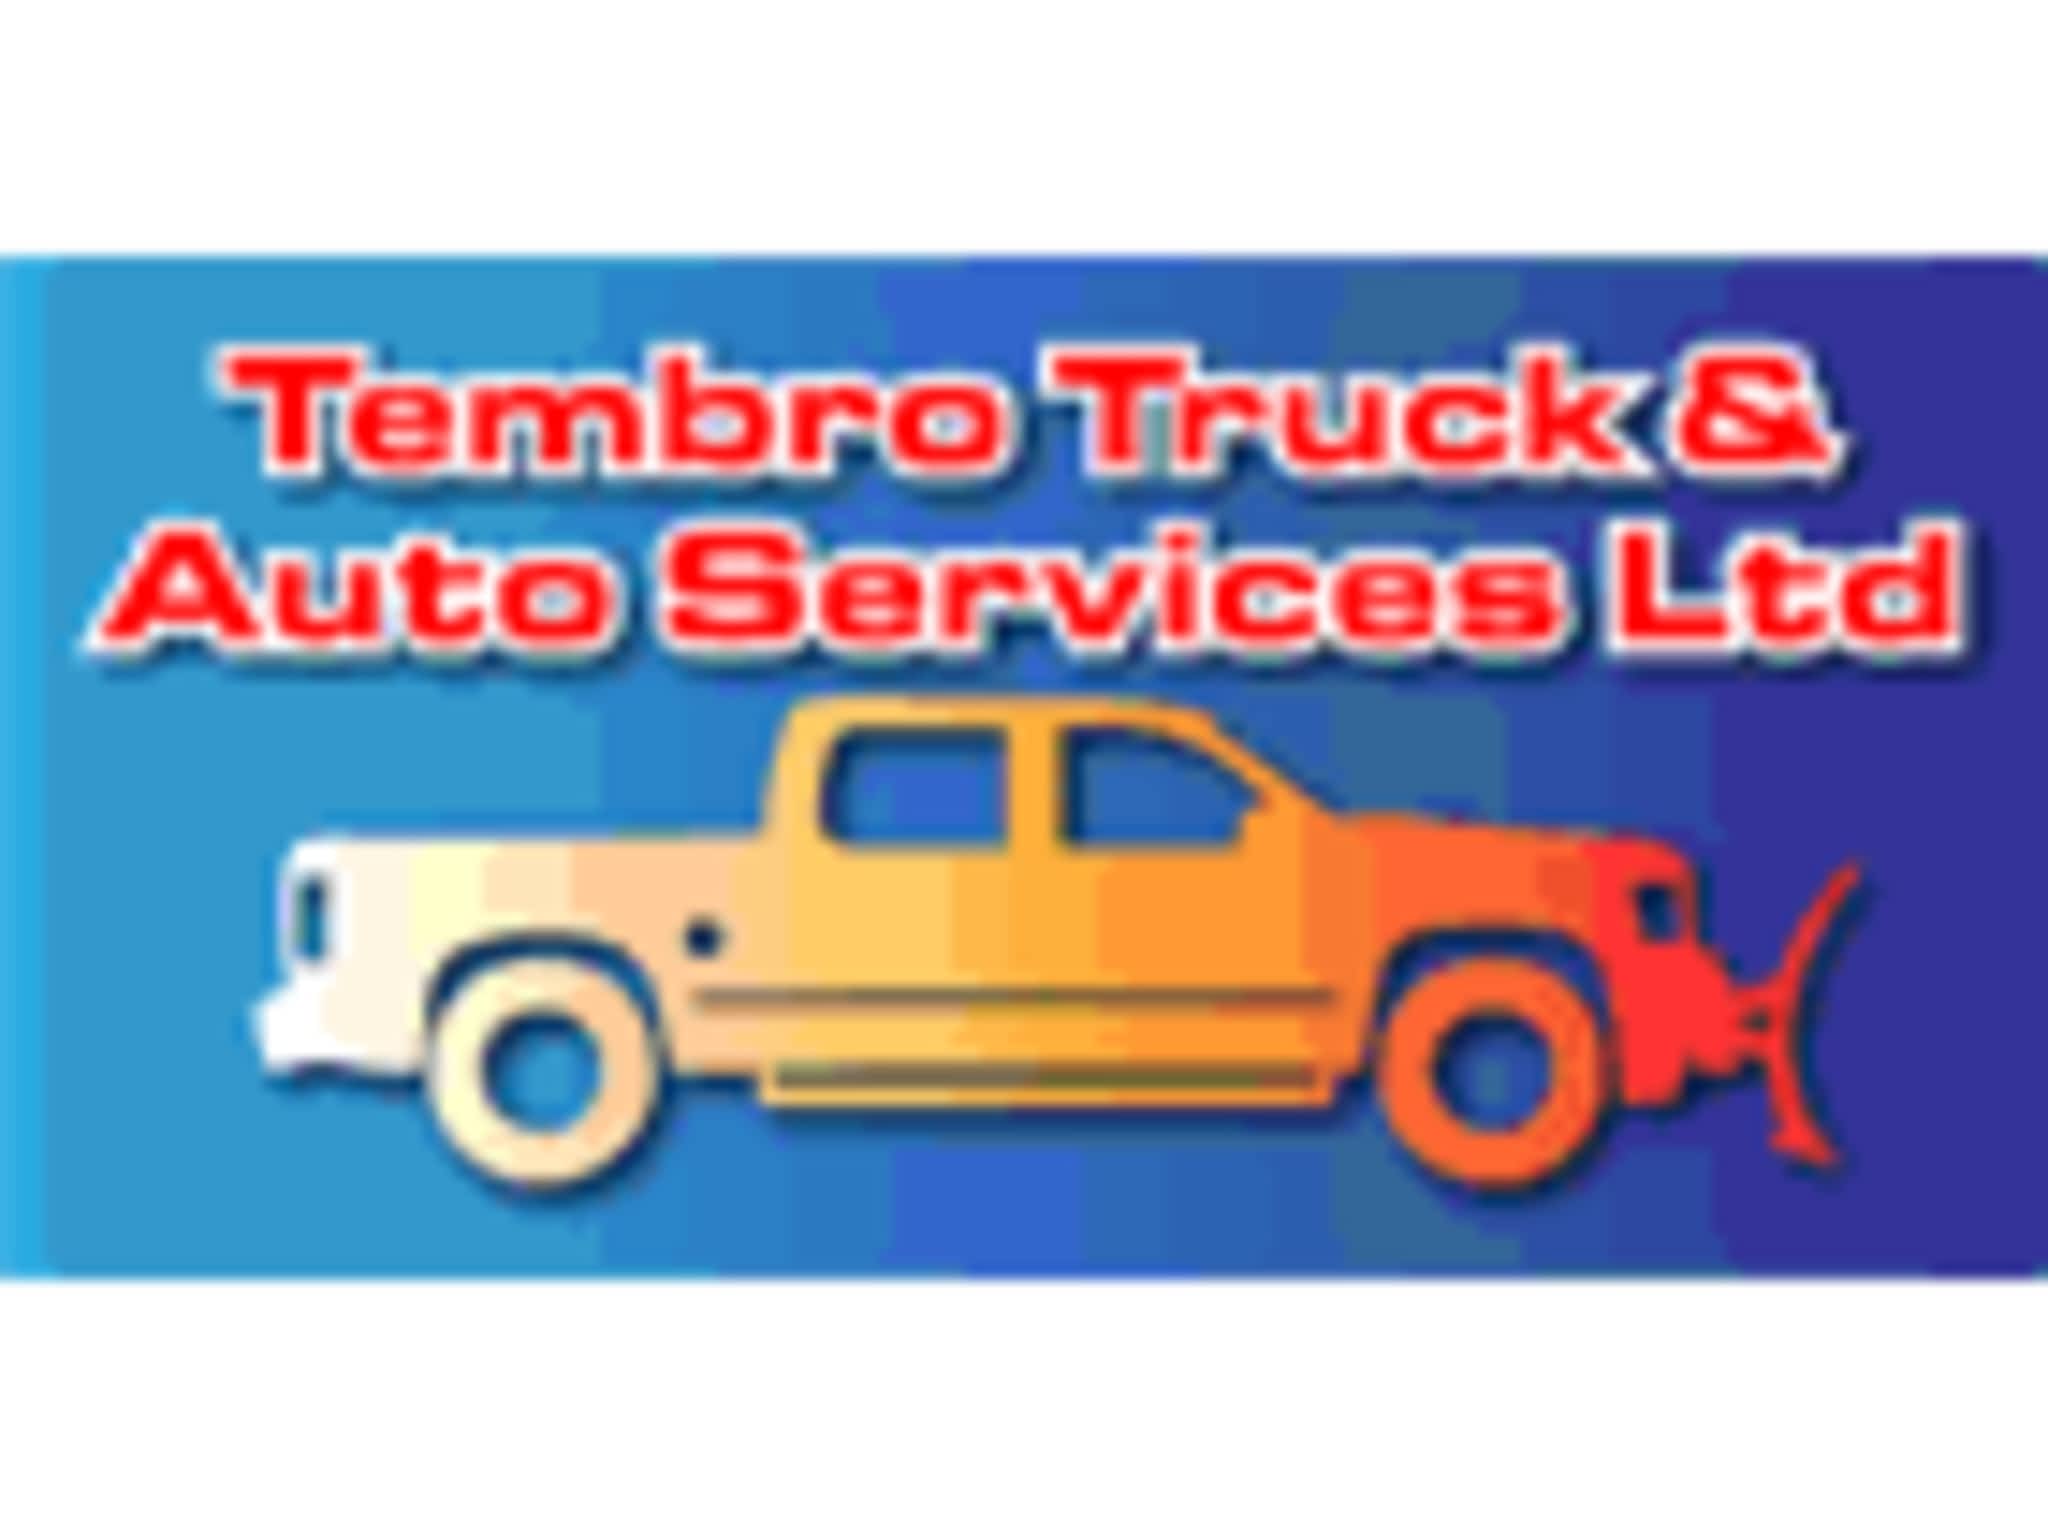 photo Tembro Truck & Auto Services Ltd